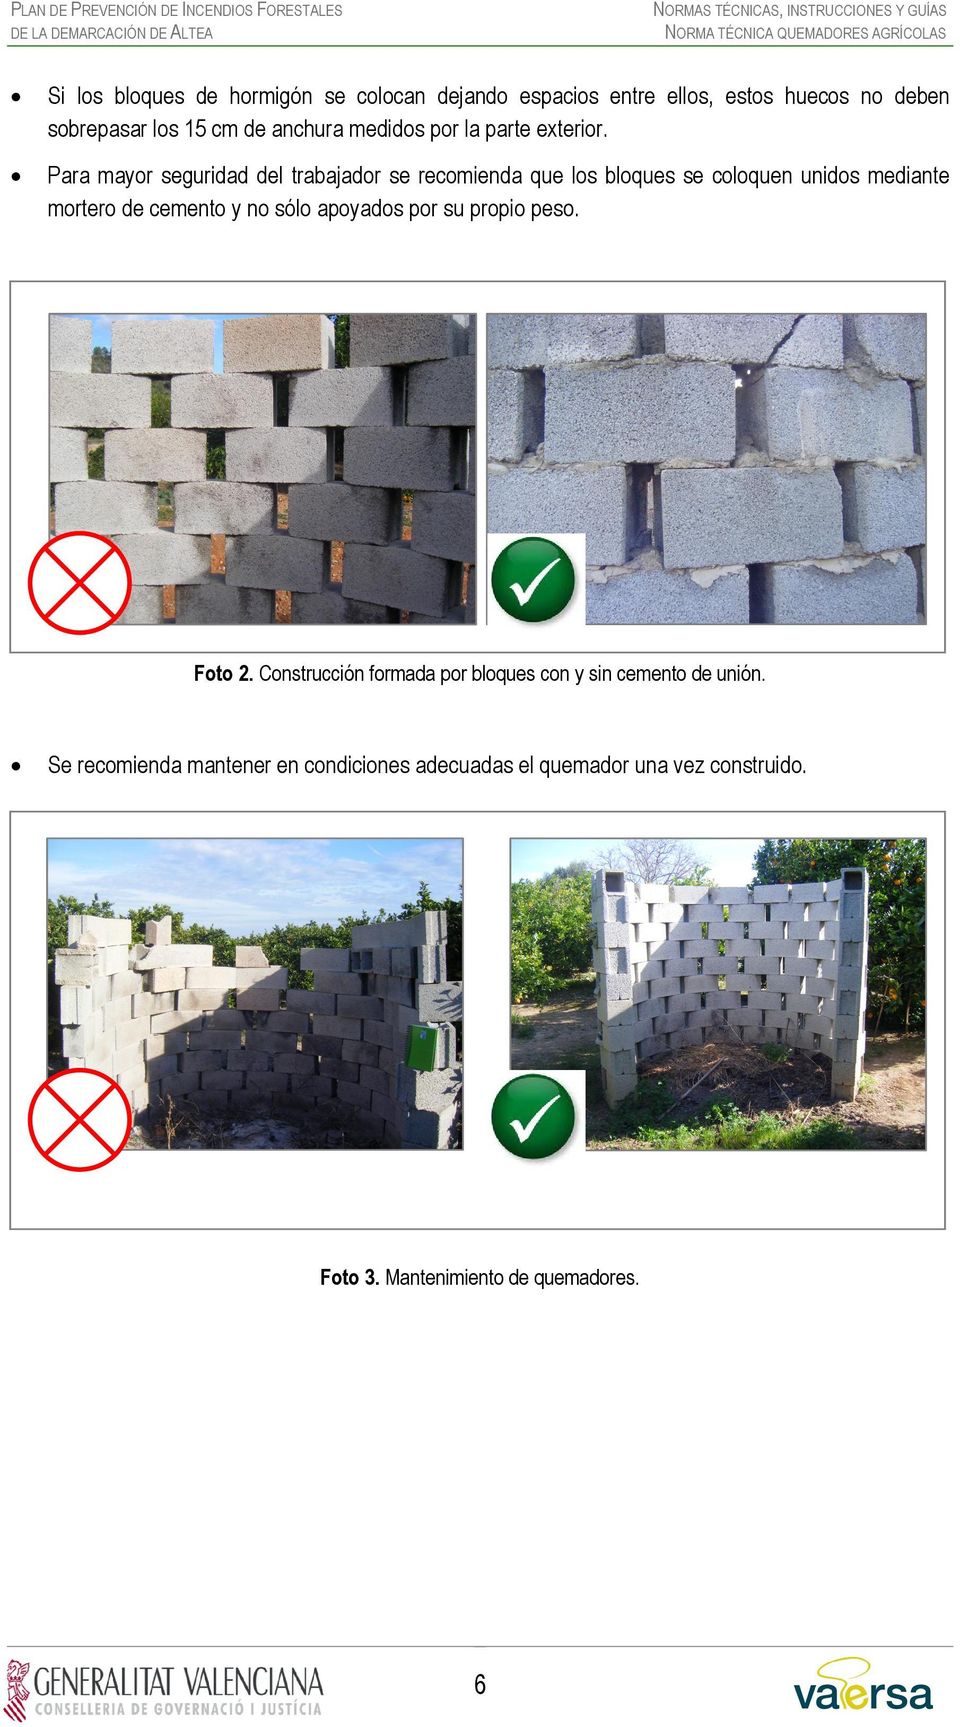 Para mayor seguridad del trabajador se recomienda que los bloques se coloquen unidos mediante mortero de cemento y no sólo apoyados